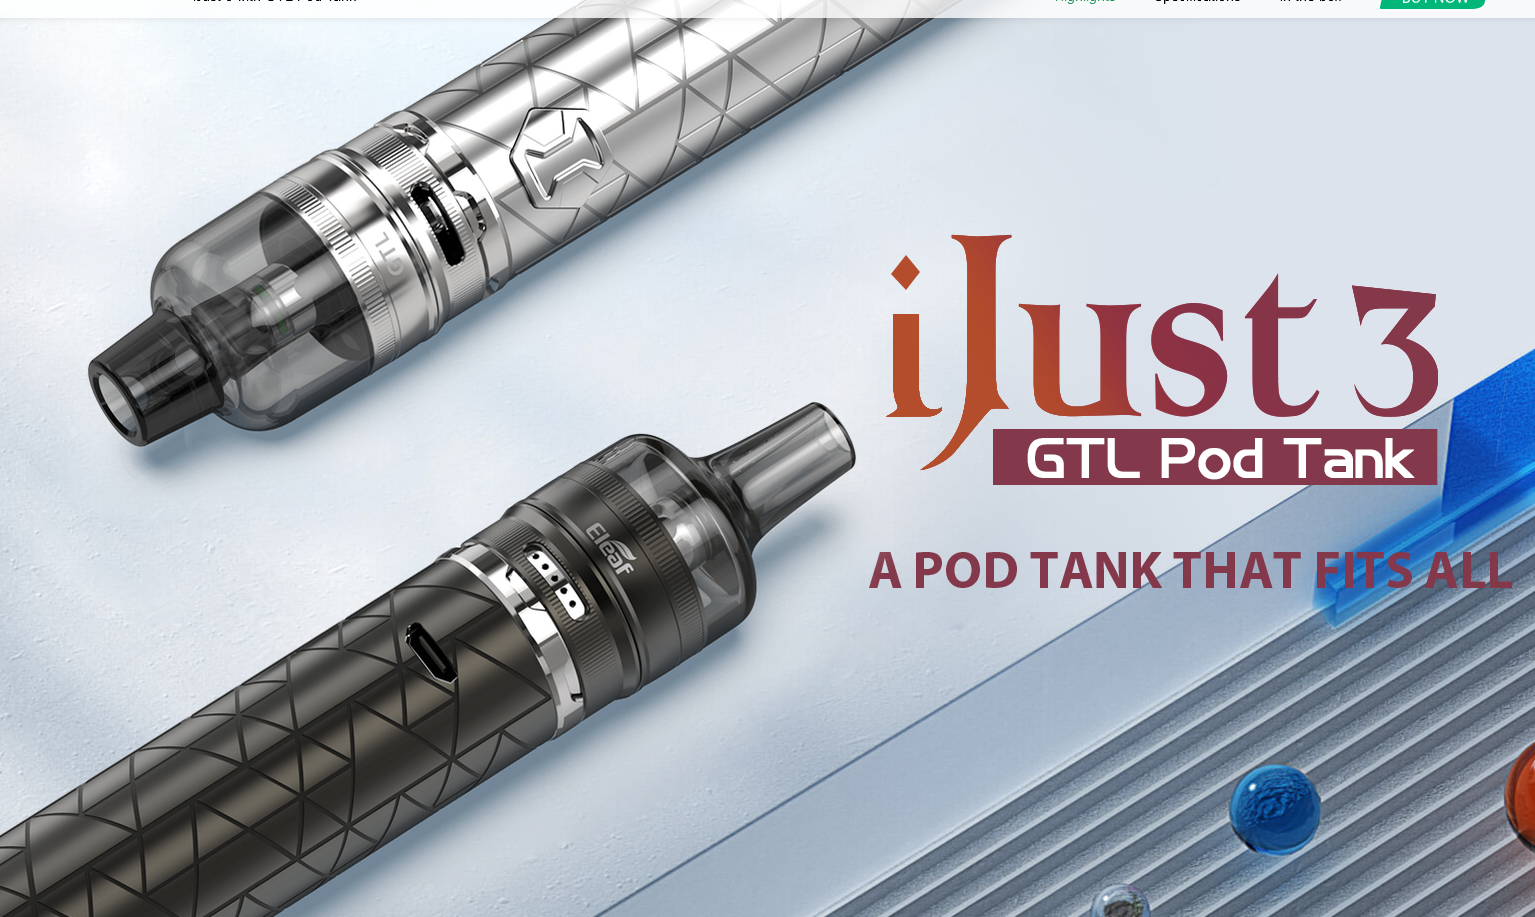 Eleaf iJust 3 with GTL Pod Tank kit - парочка "новых" наборов из того, что было...